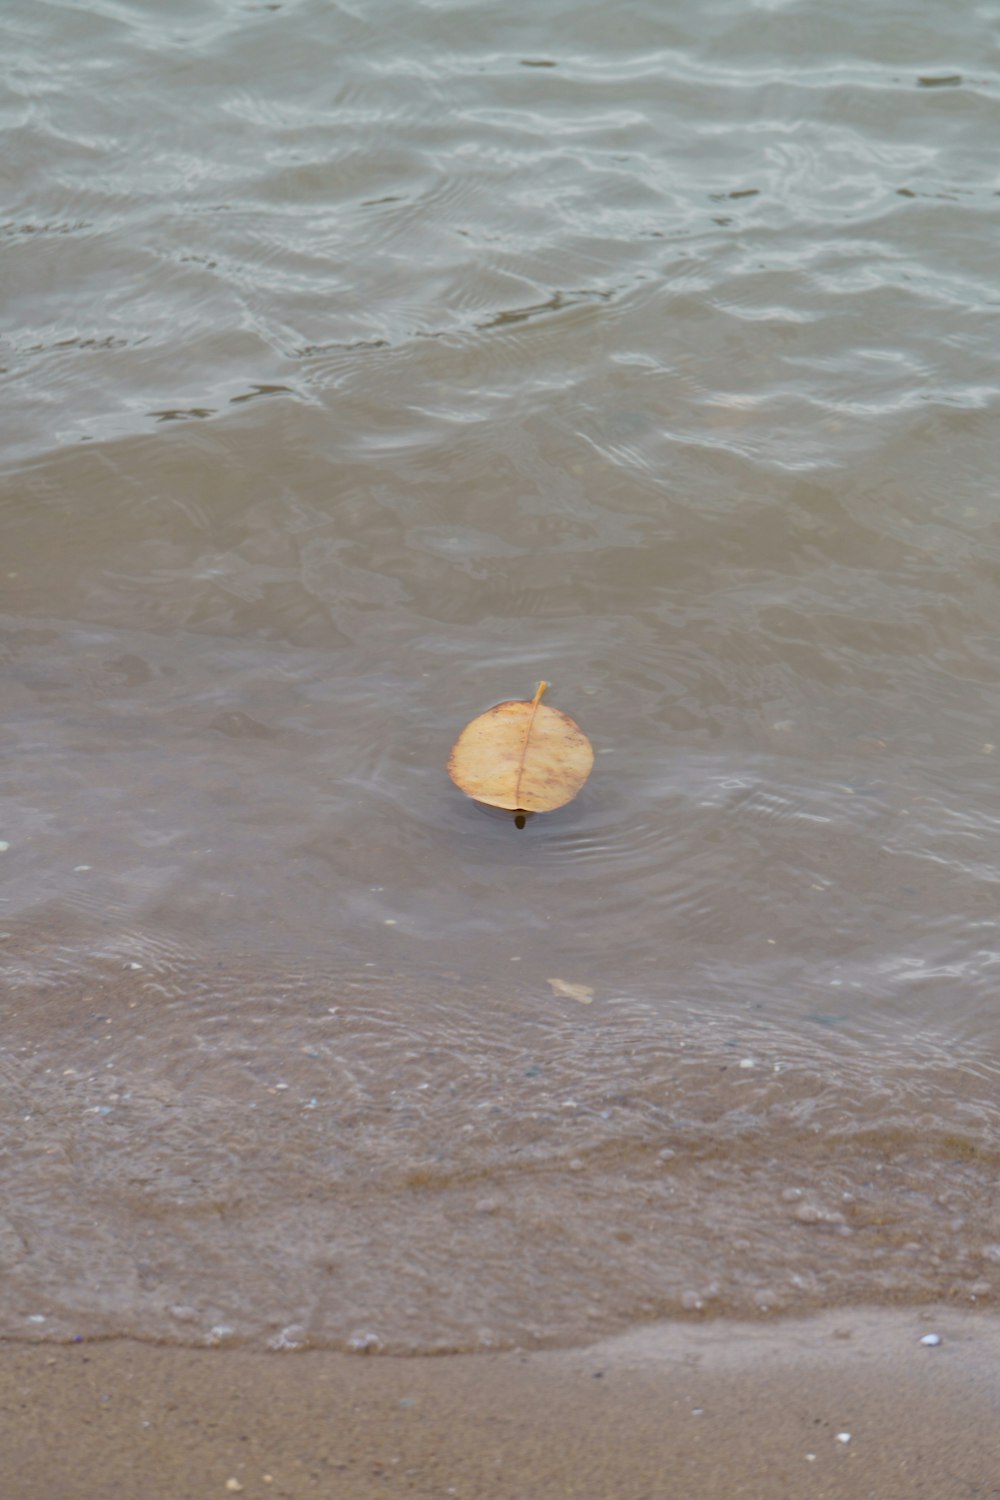 Una conchiglia che galleggia nell'acqua su una spiaggia foto – Natura  Immagine gratuita su Unsplash